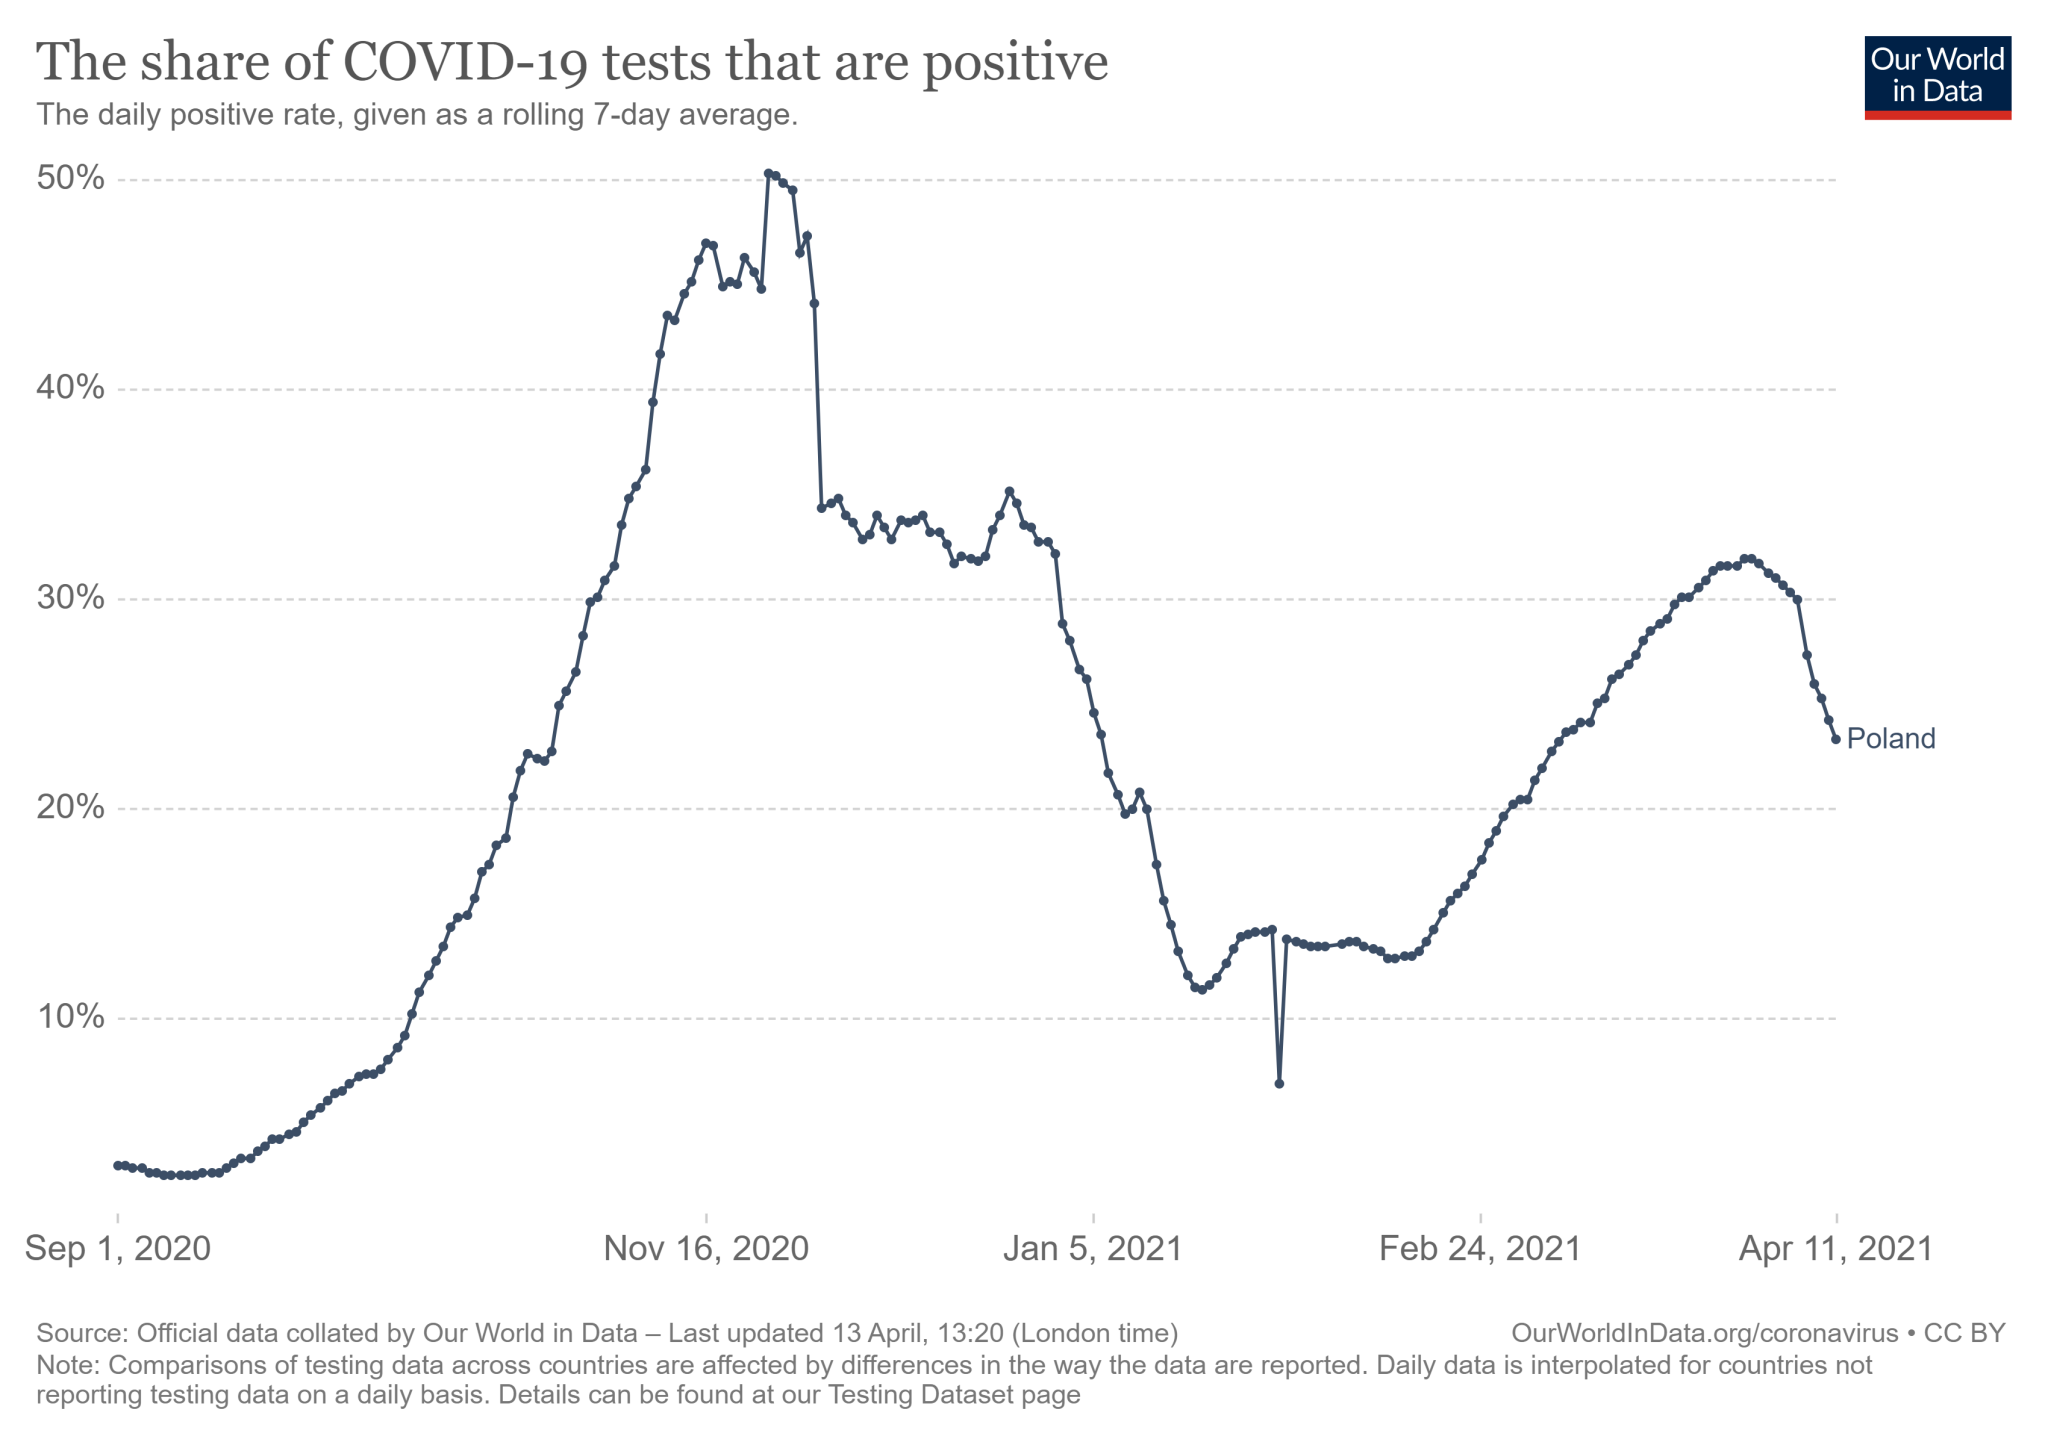 Dynamika wskaźnika pozytywnych testów na koronawirusa w Polsce od 1 września 2020 do 11 kwietnia 2021